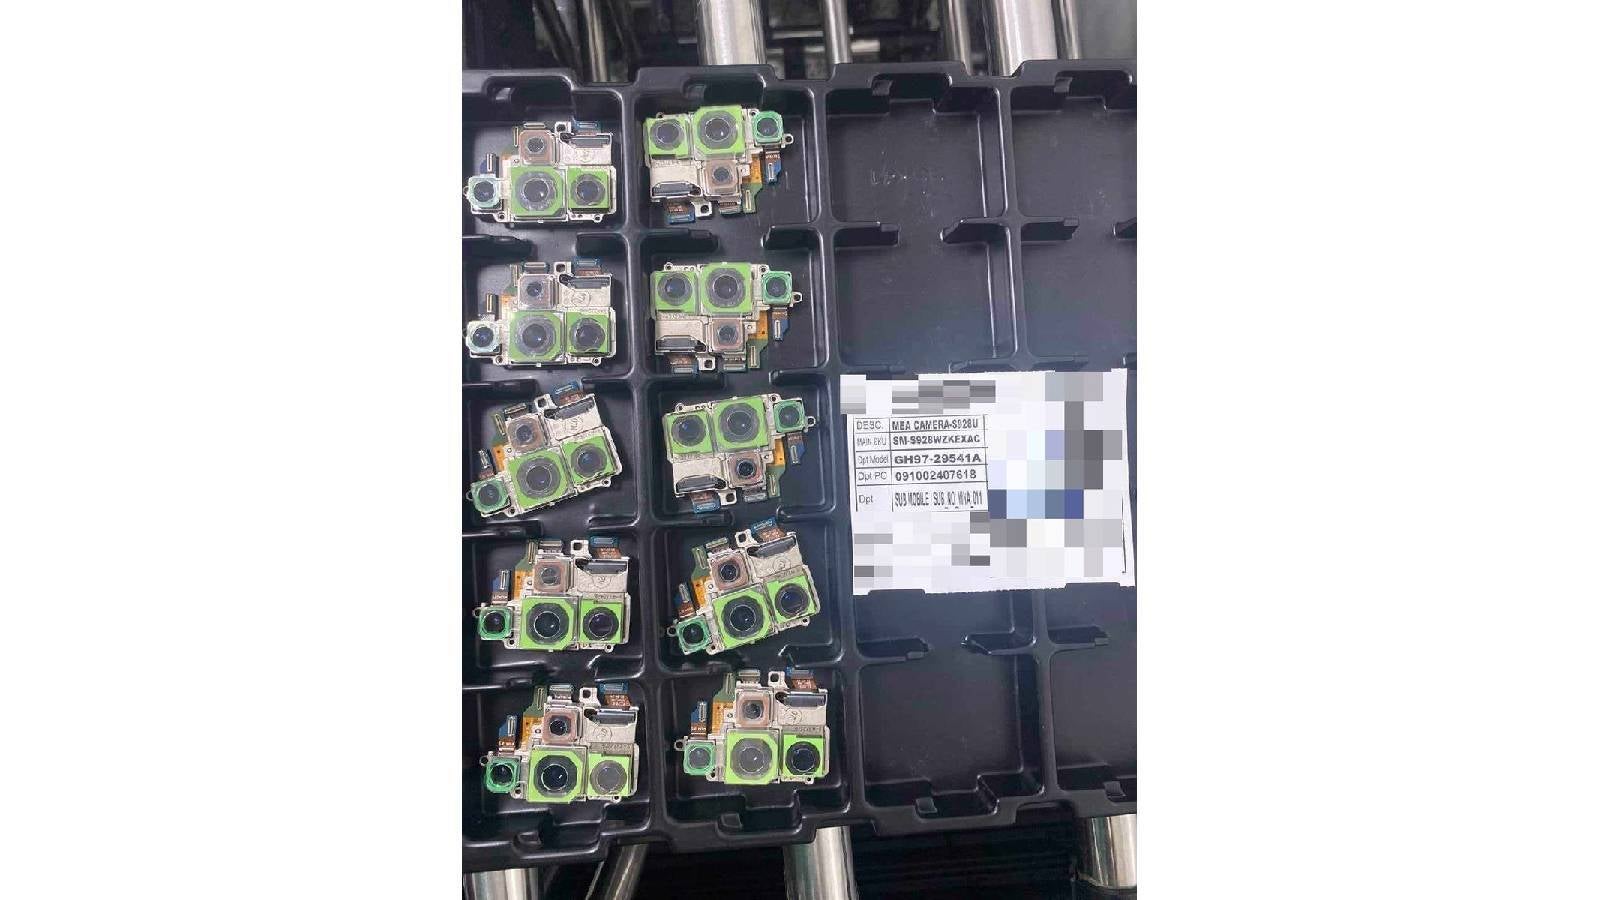 Uma imagem presumivelmente tirada em uma fábrica mostra o conjunto de câmeras do Galaxy S24 Ultra – o vazamento de fábrica do Galaxy S24 Ultra parece confirmar a pior suspeita sobre o telefone